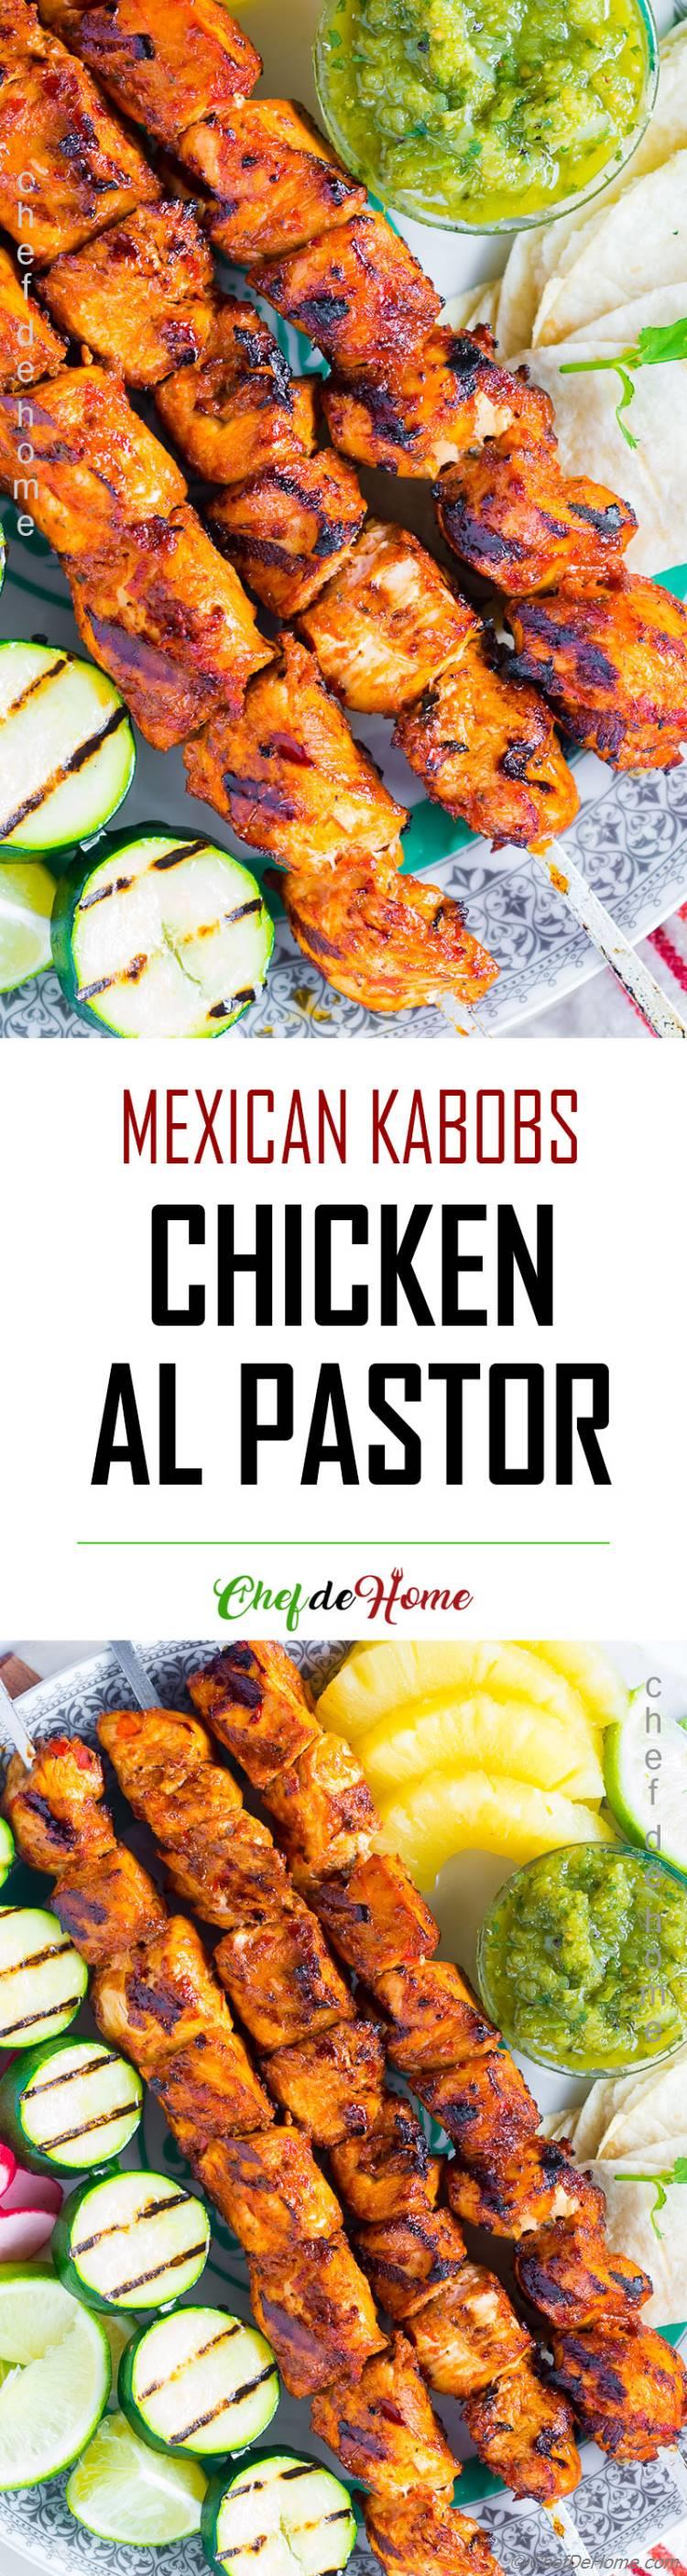 Delicious Grilled El Pastor Chicken